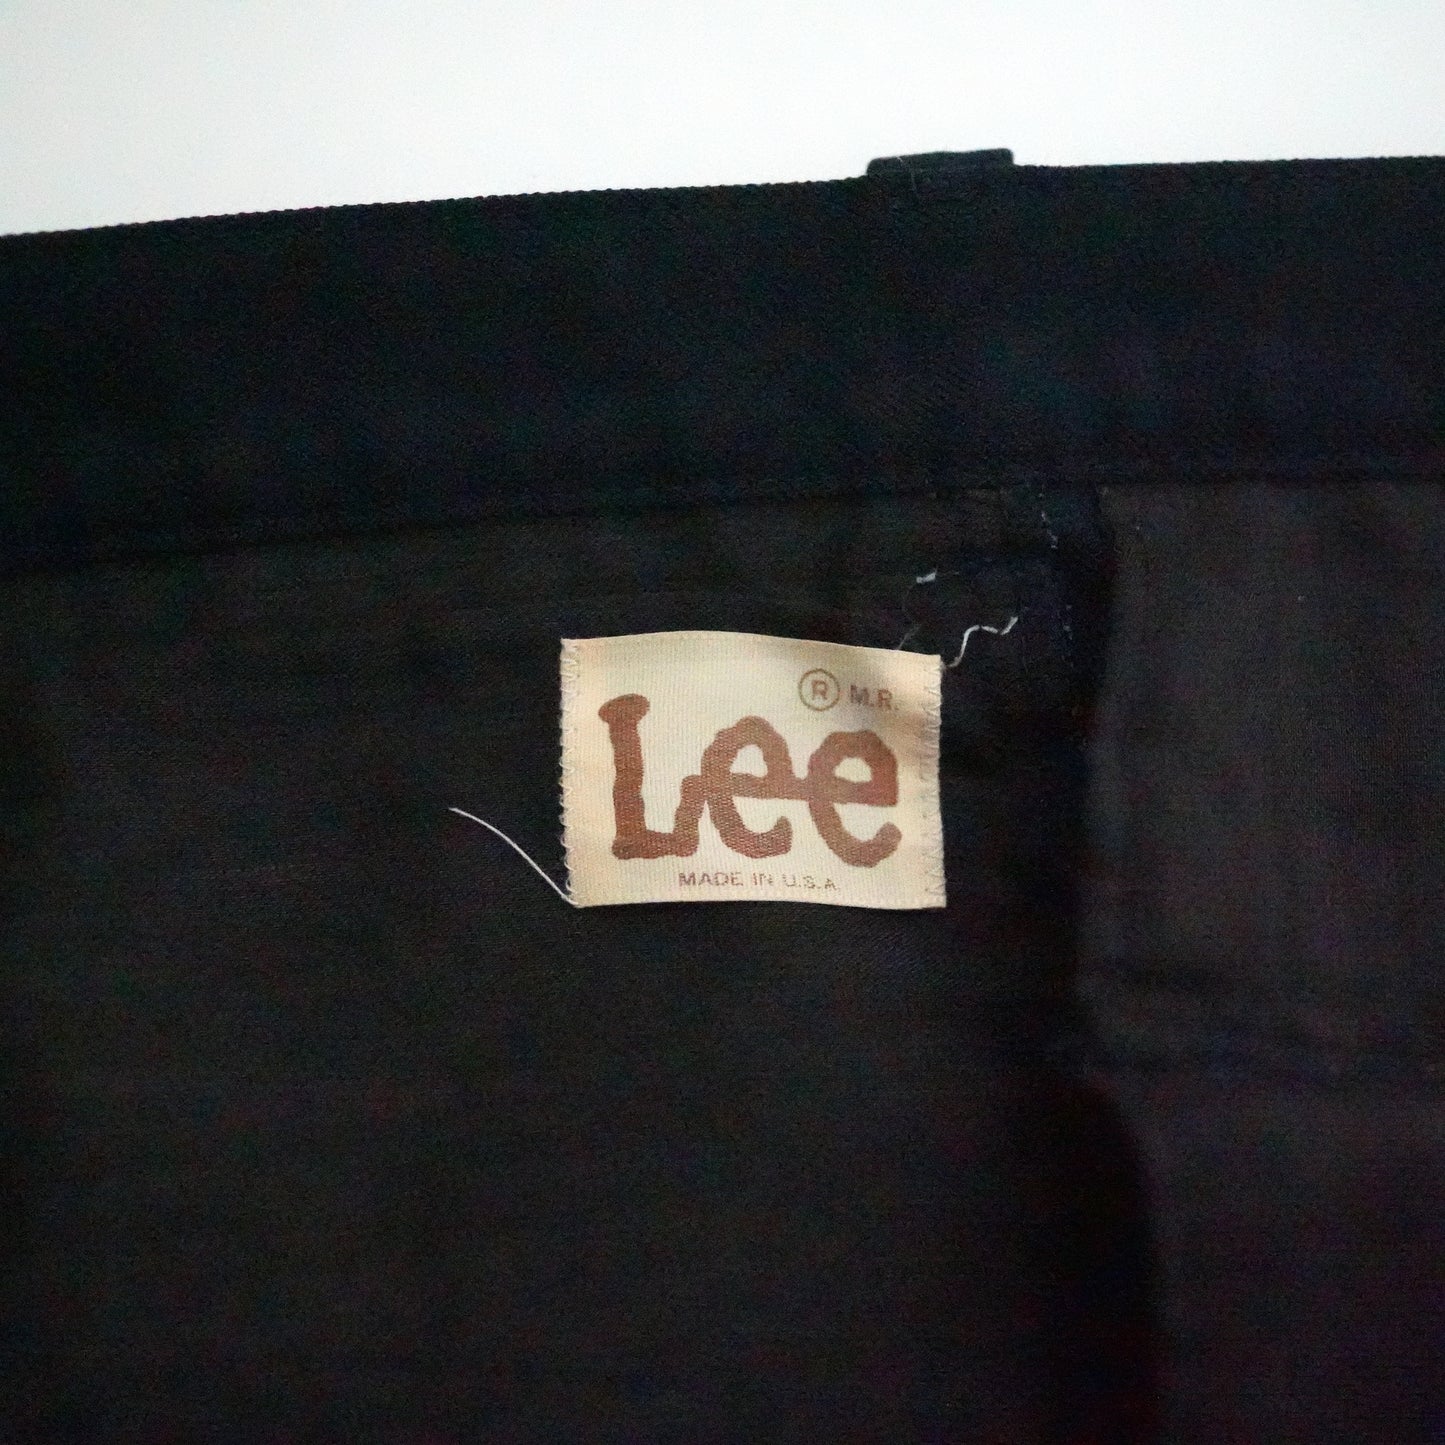 Lee long pants